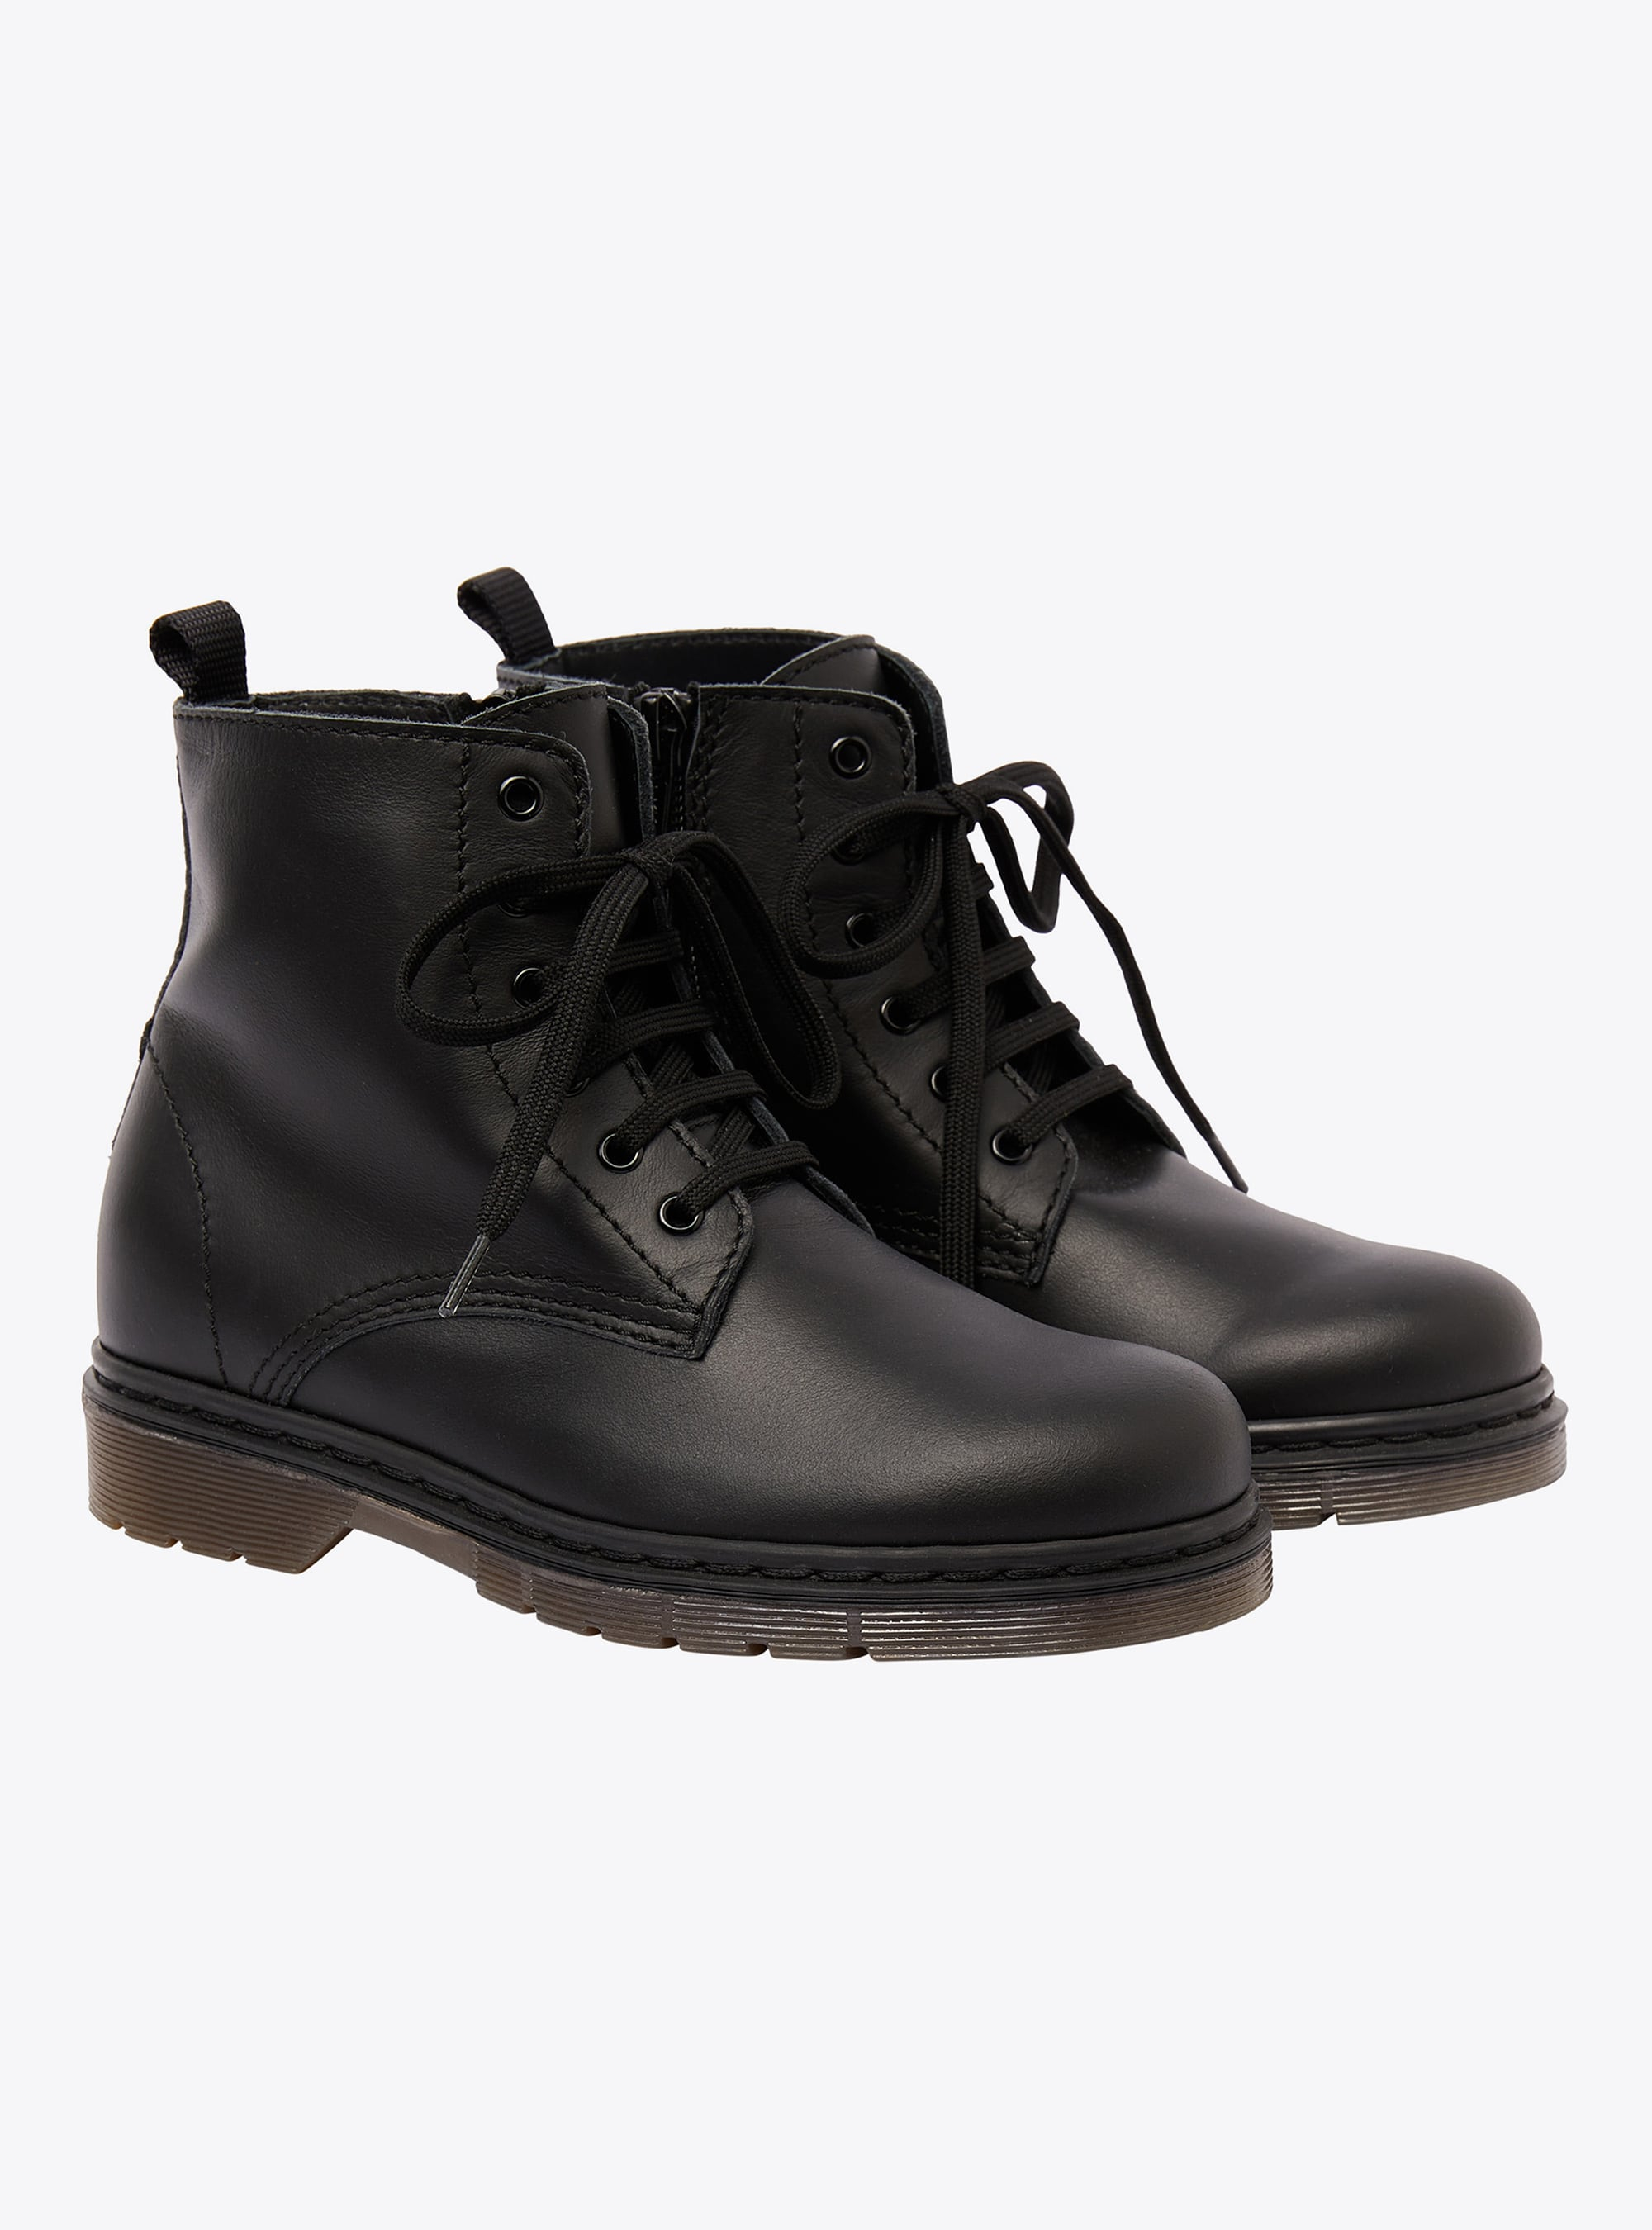 Black leather combat boots - Shoes - Il Gufo